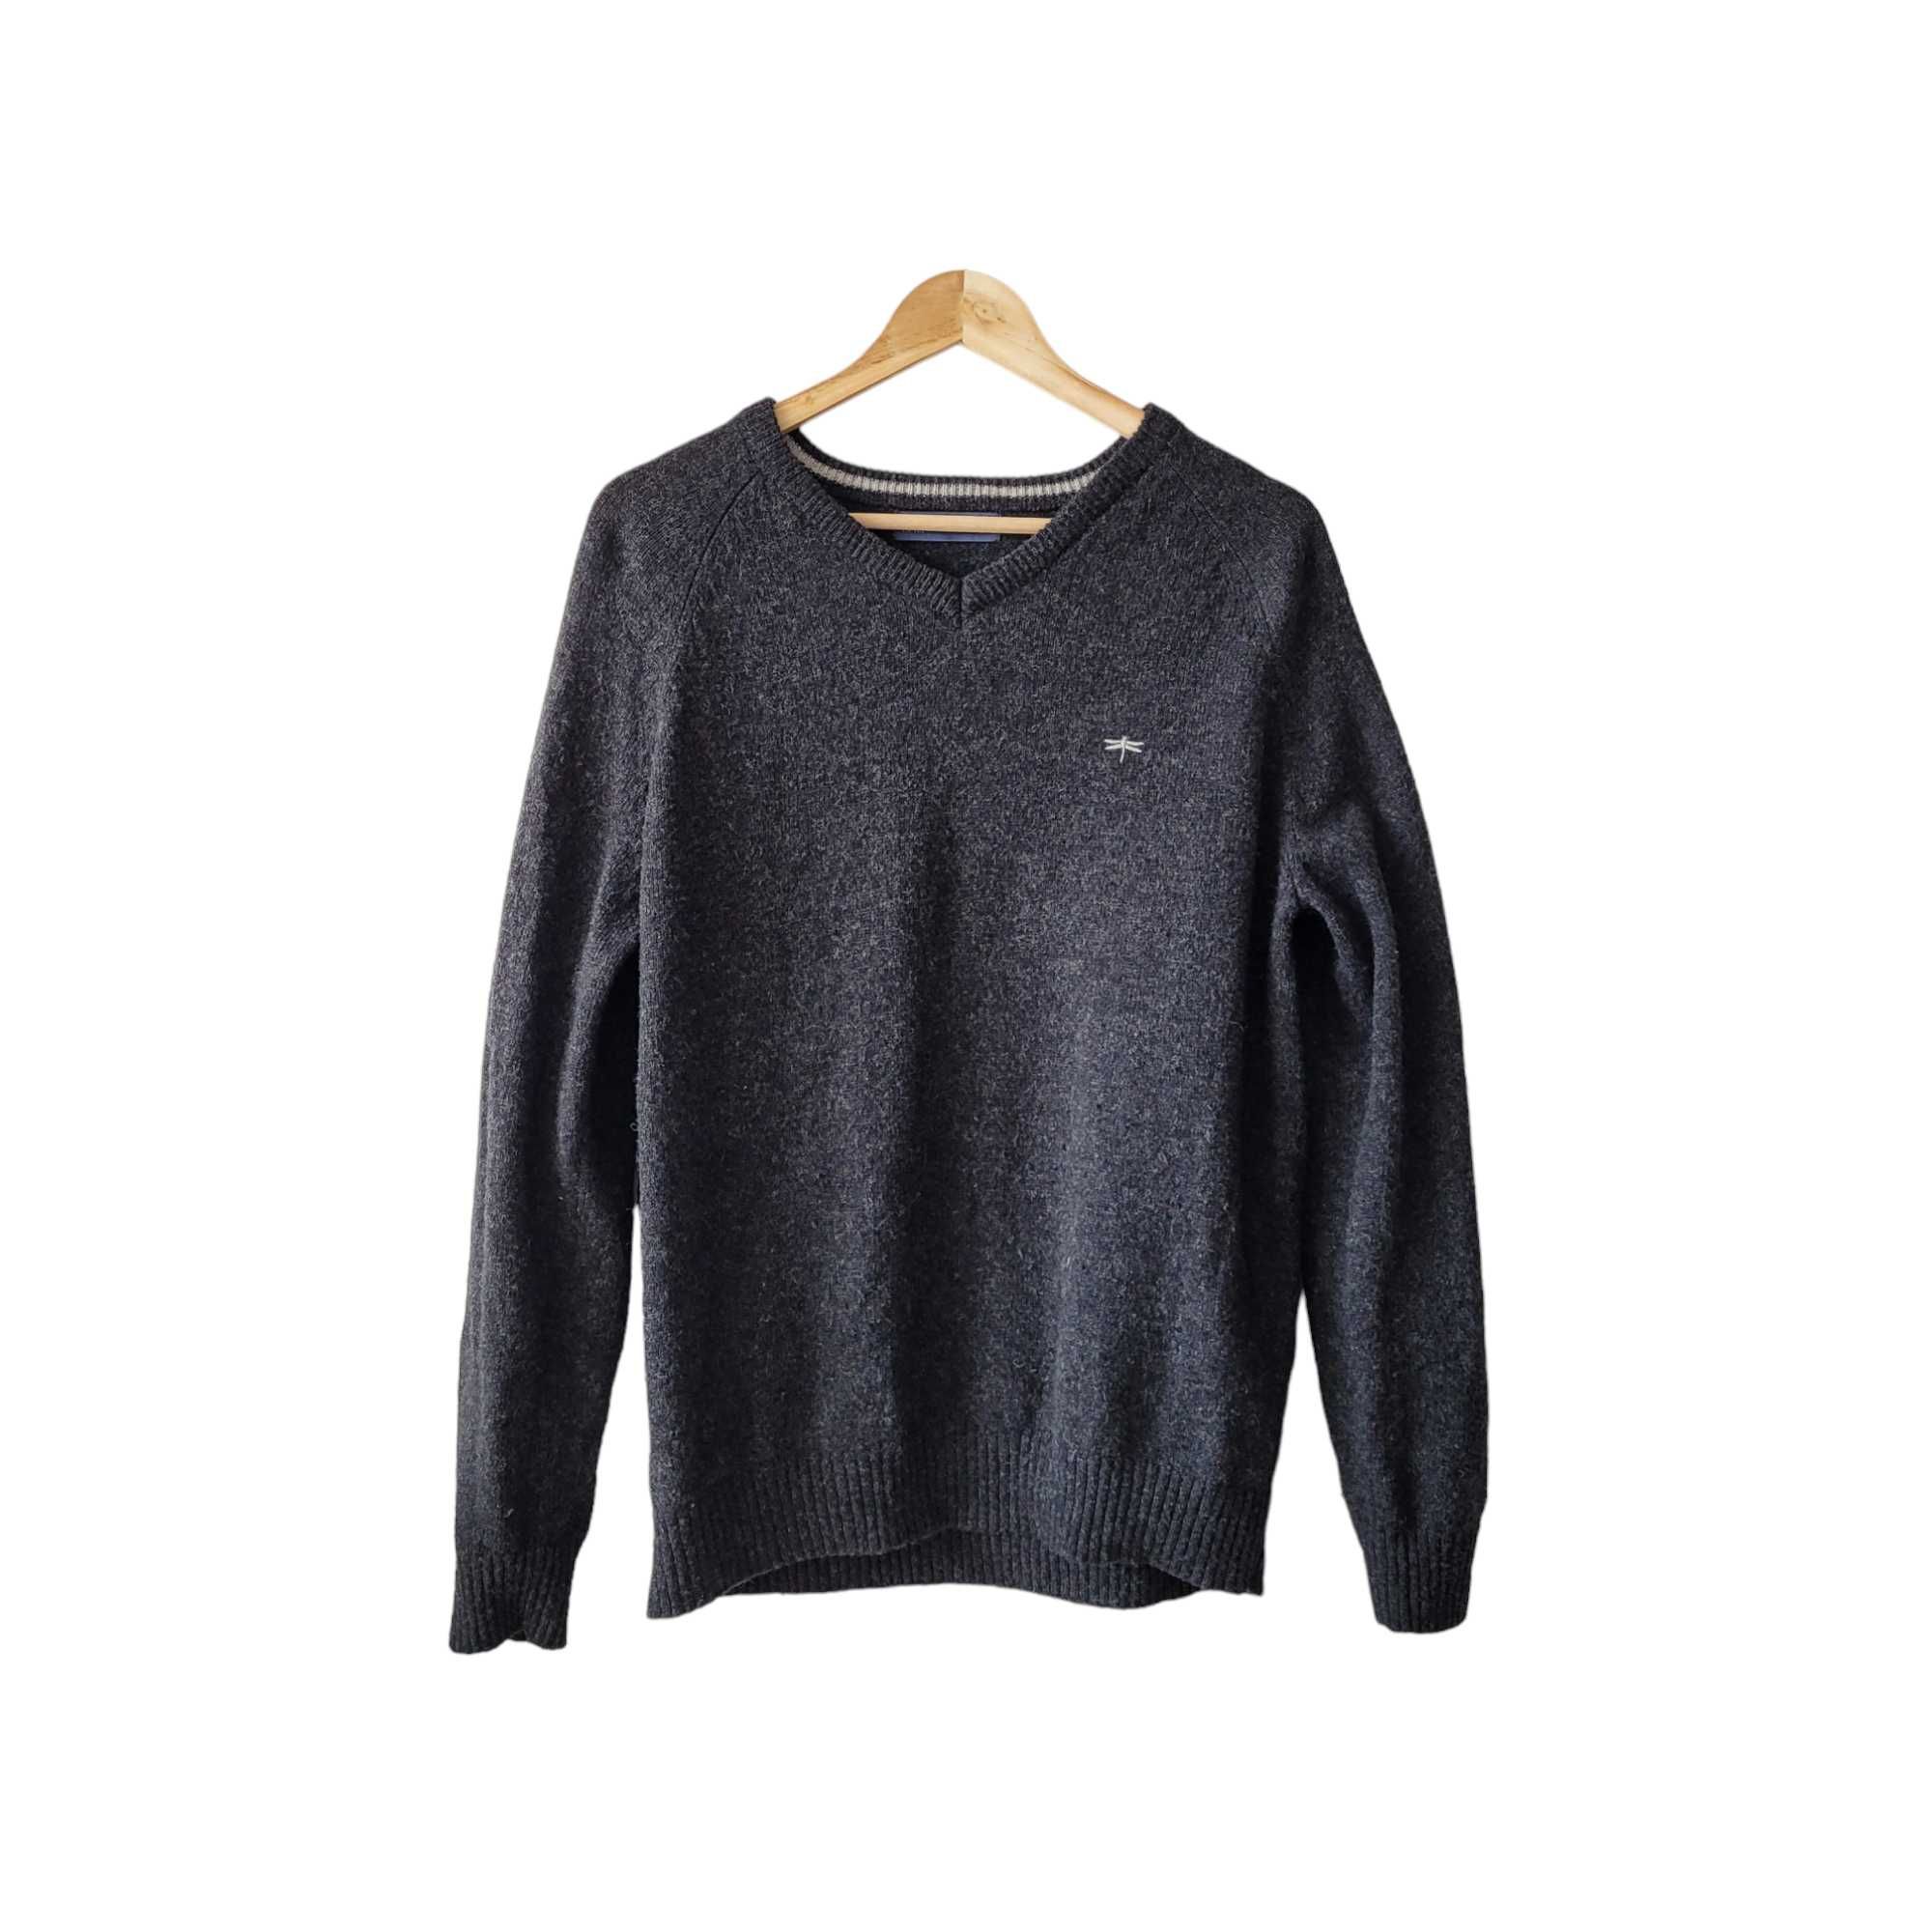 Szary wełniany sweter męski L Easy 100% wełna jagnięca ciepły na zimę